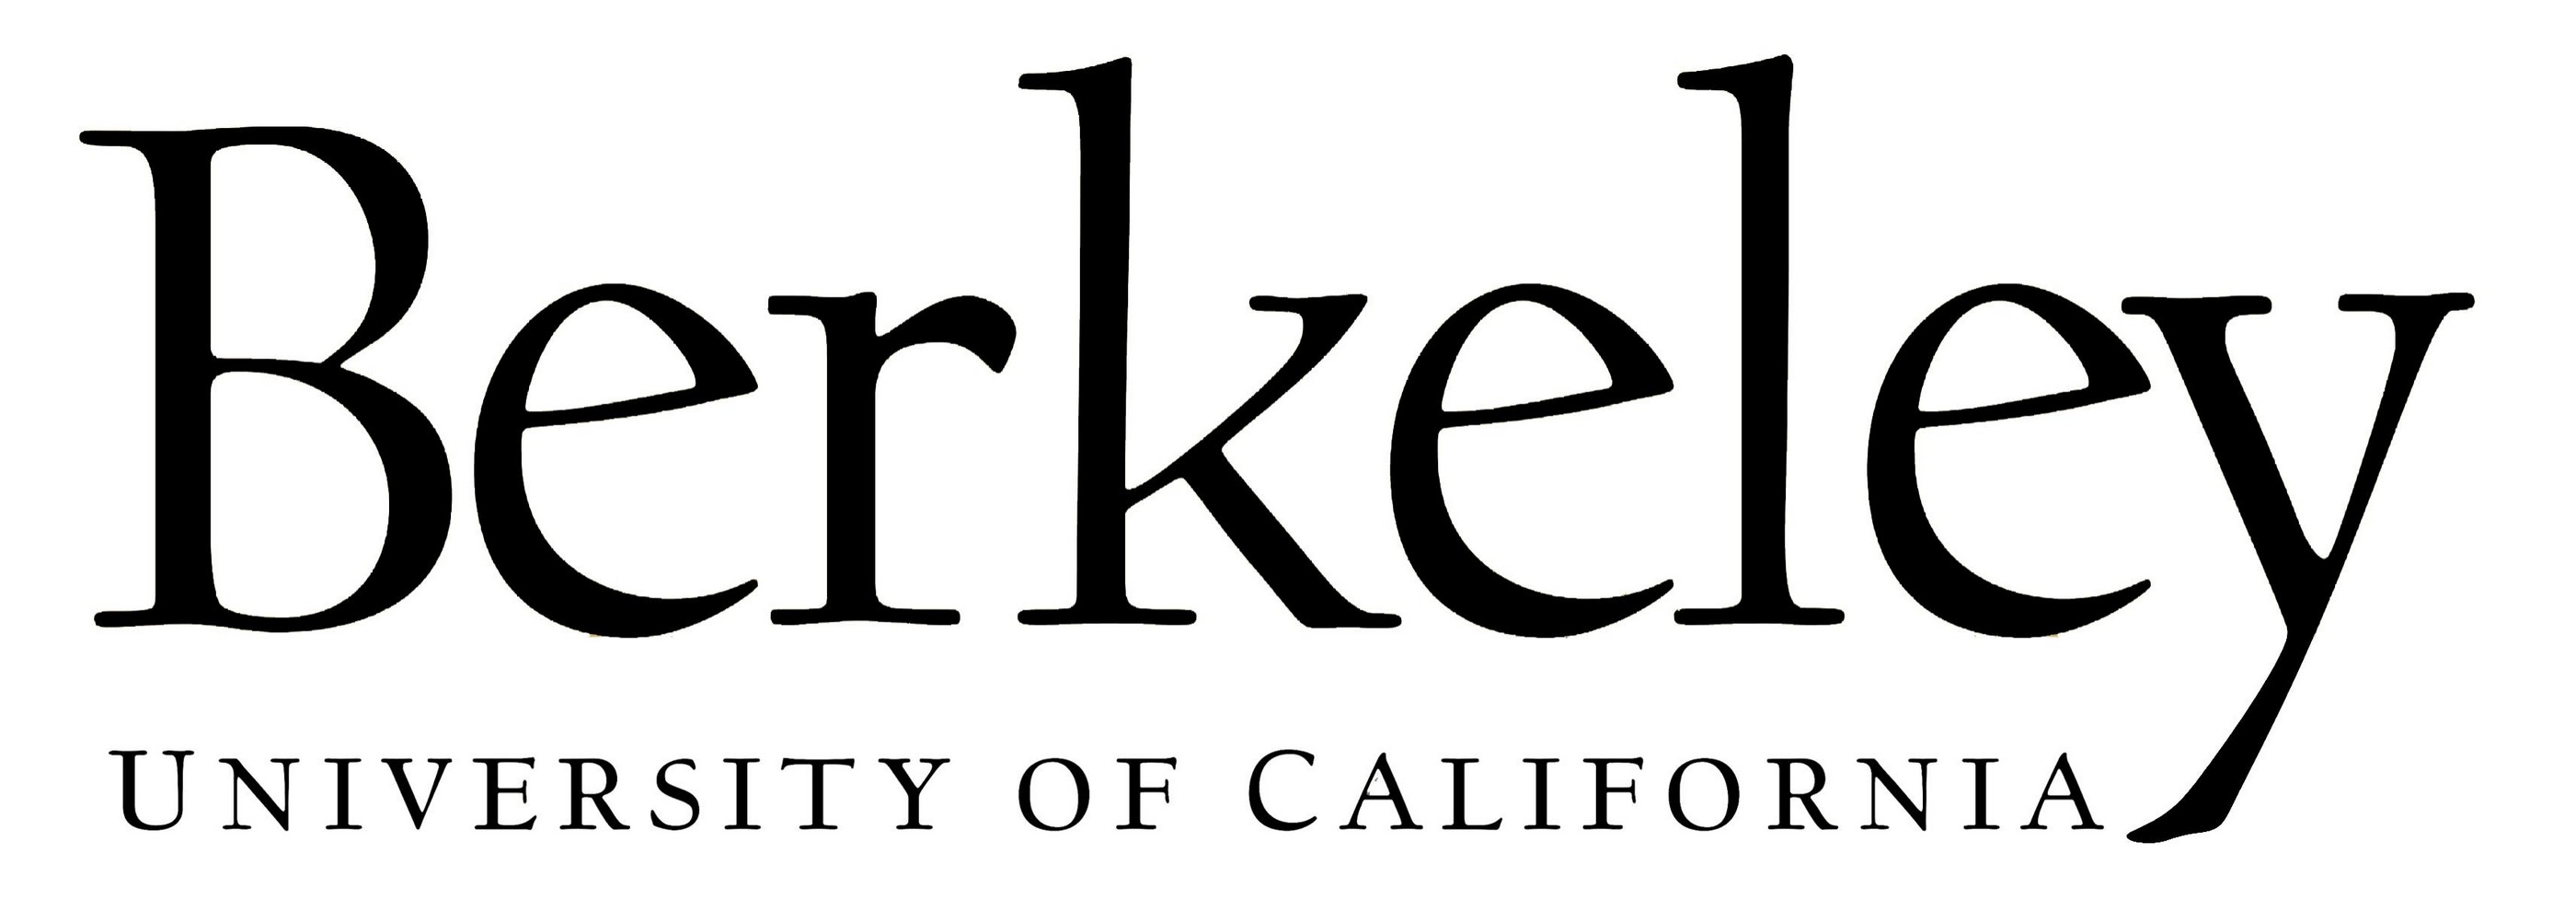 File:Uc-berkeley logo.jpg